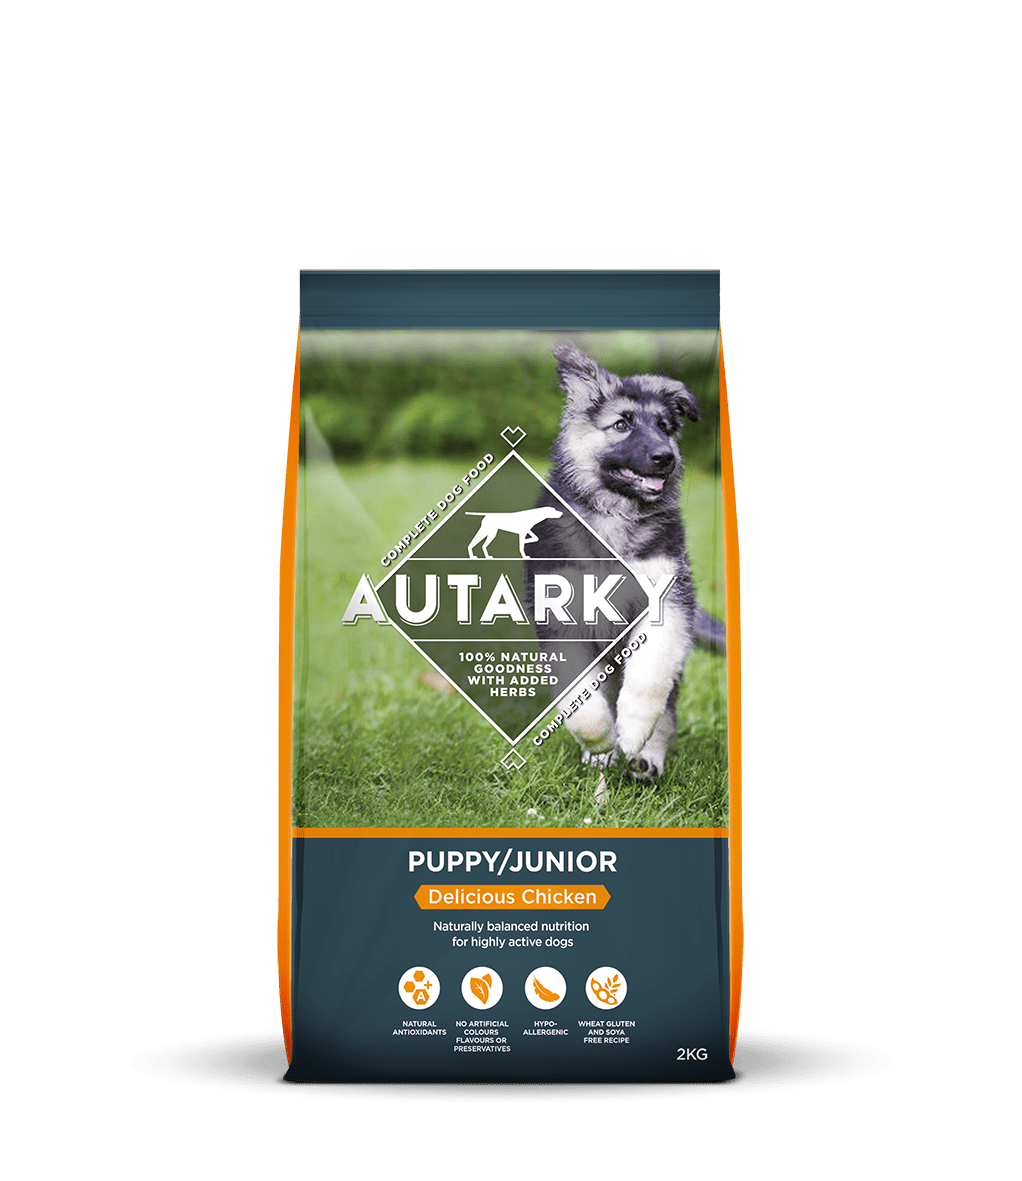 Autarky Puppy Junior Chicken, Autarky, 2 kg